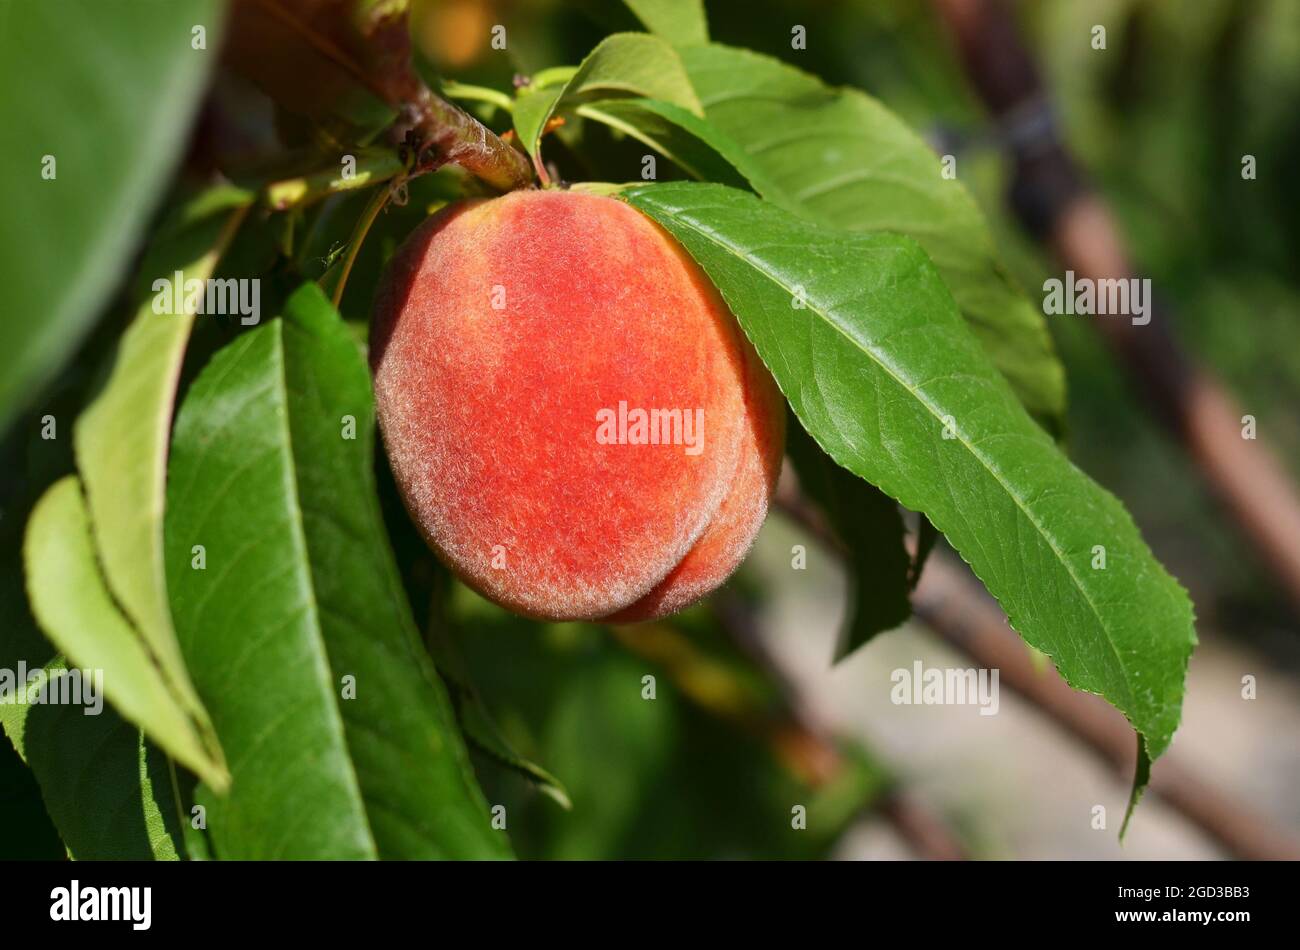 Nahaufnahme eines reifen saftigen Pfirsichs auf einem Zweig mit grünen Blättern. Konzept der organischen Gartenarbeit. Stockfoto